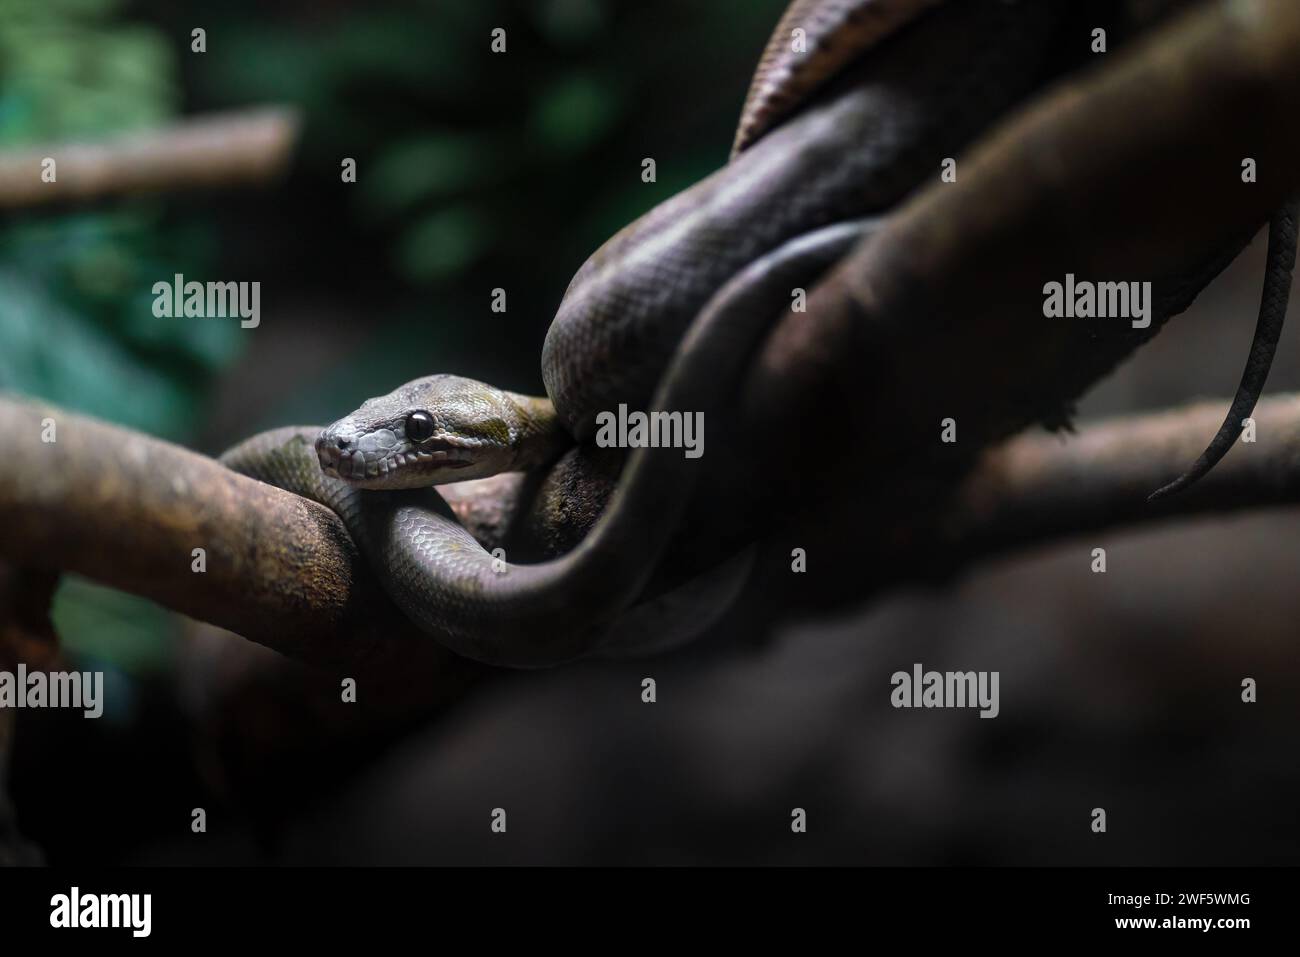 Amazon Tree Boa snake (Corallus hortulanus) Stock Photo